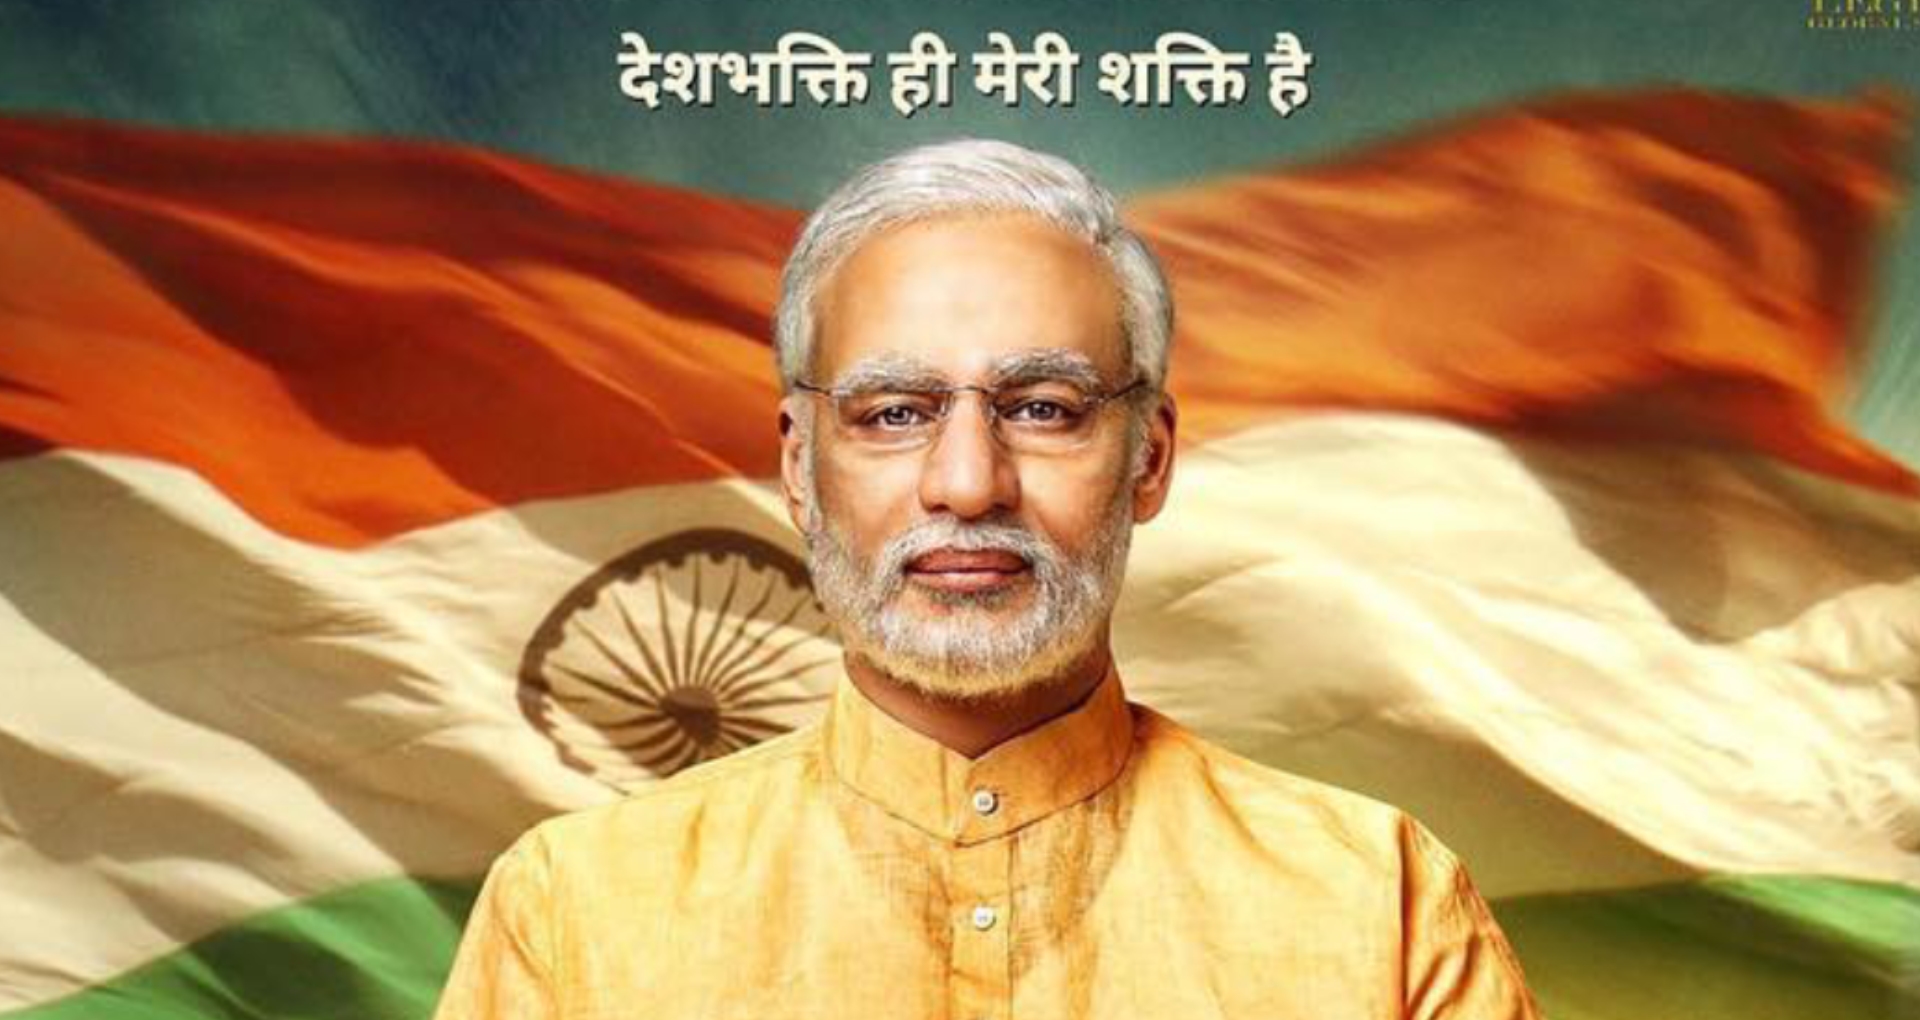 फिल्म पीएम नरेंद्र मोदी का दूसरा पोस्टर इस दिन होगा रिलीज, भाजपा अध्यक्ष अमित शाह करेंगे इसे लॉन्च